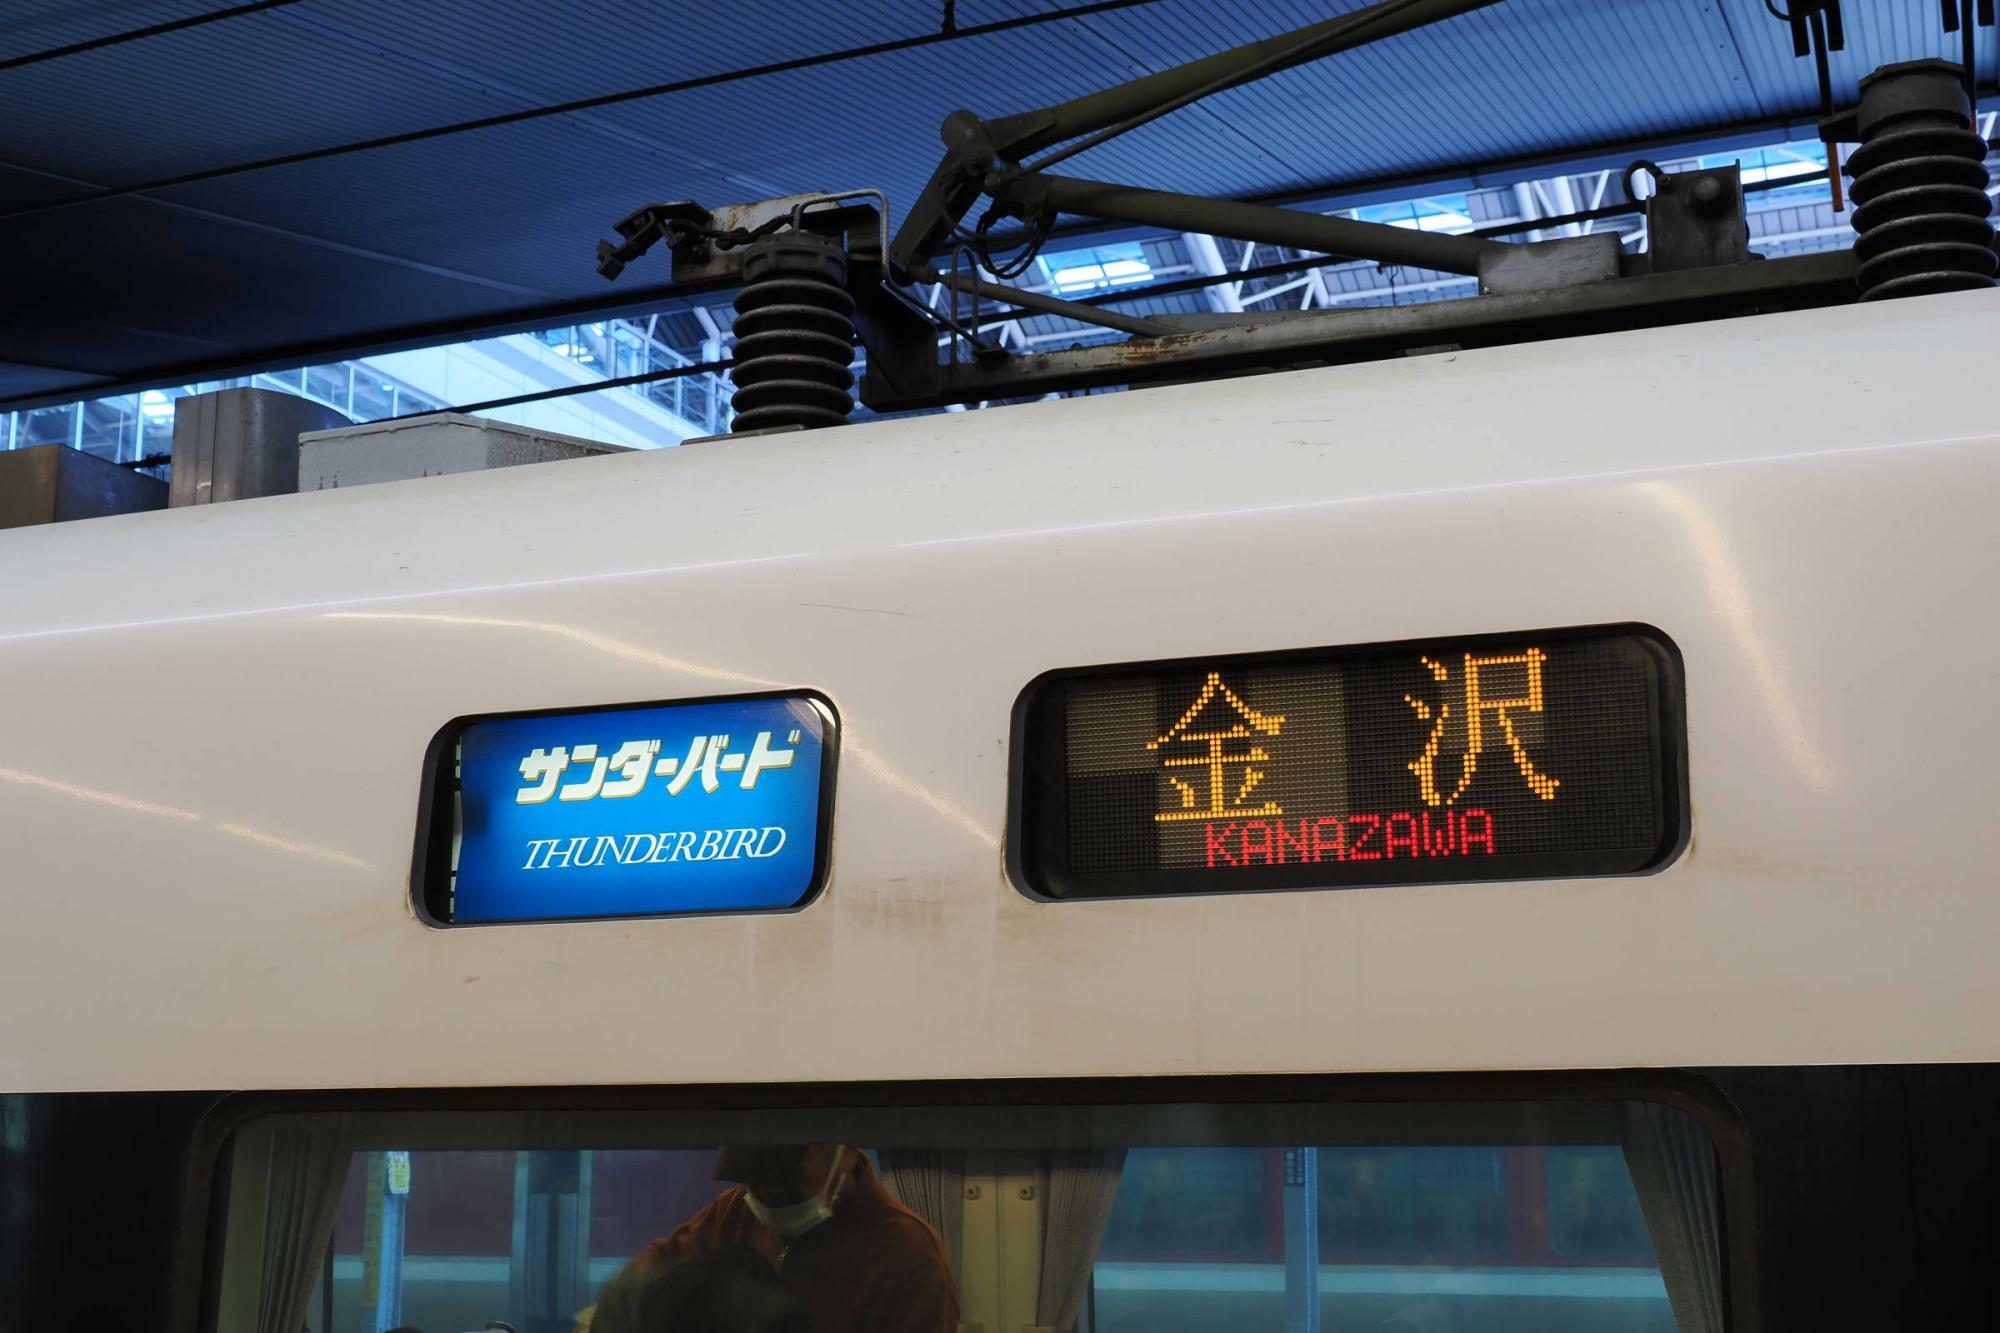 大阪駅で見られた「金沢」行きの表示。直通列車の運行を引き続き望む声も少なくはない